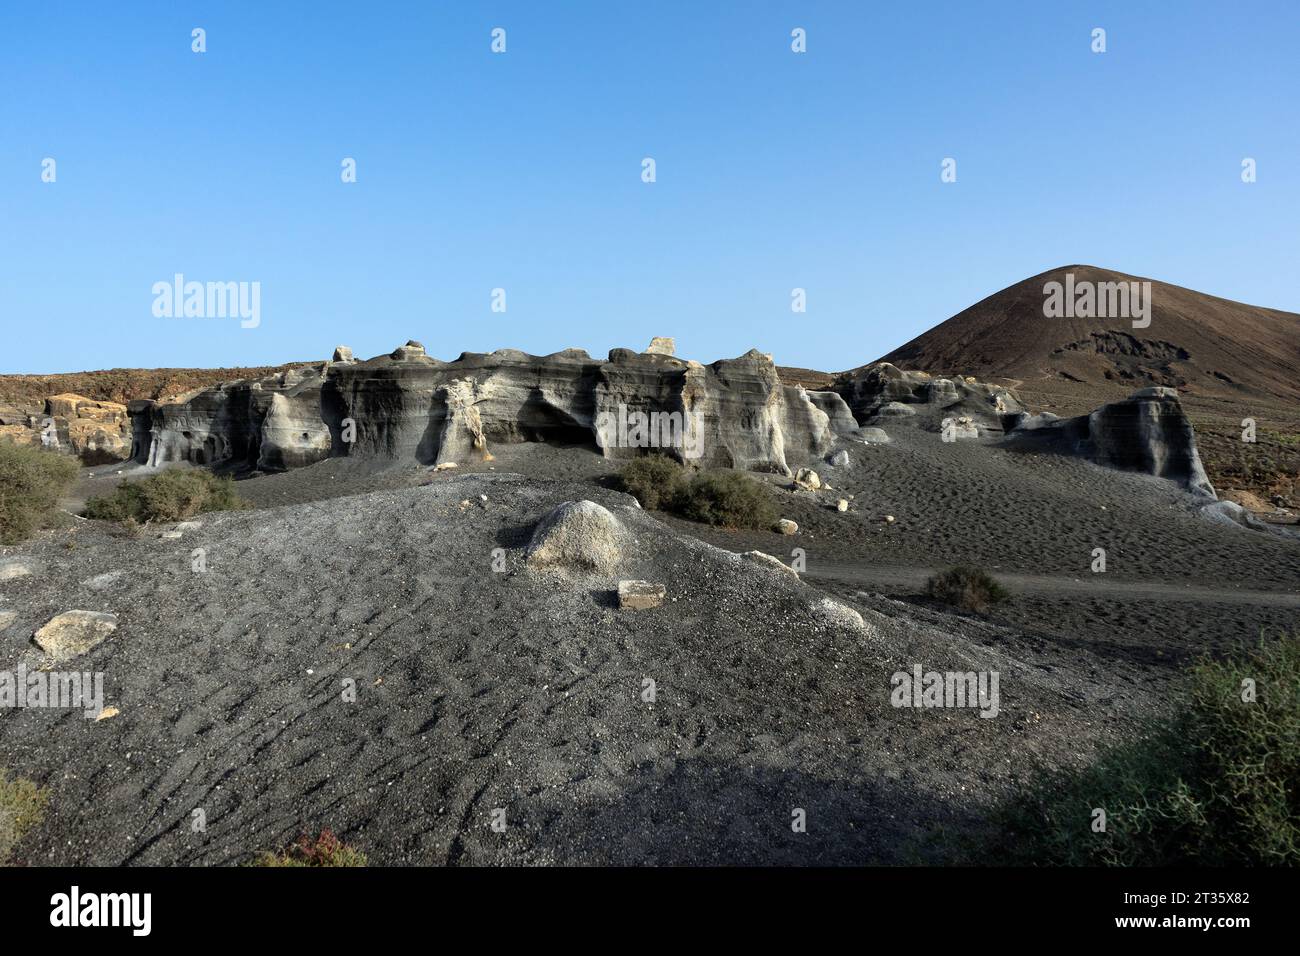 Spain,Canary Islands, Lanzarote: rock formations of La Rofera Stock Photo